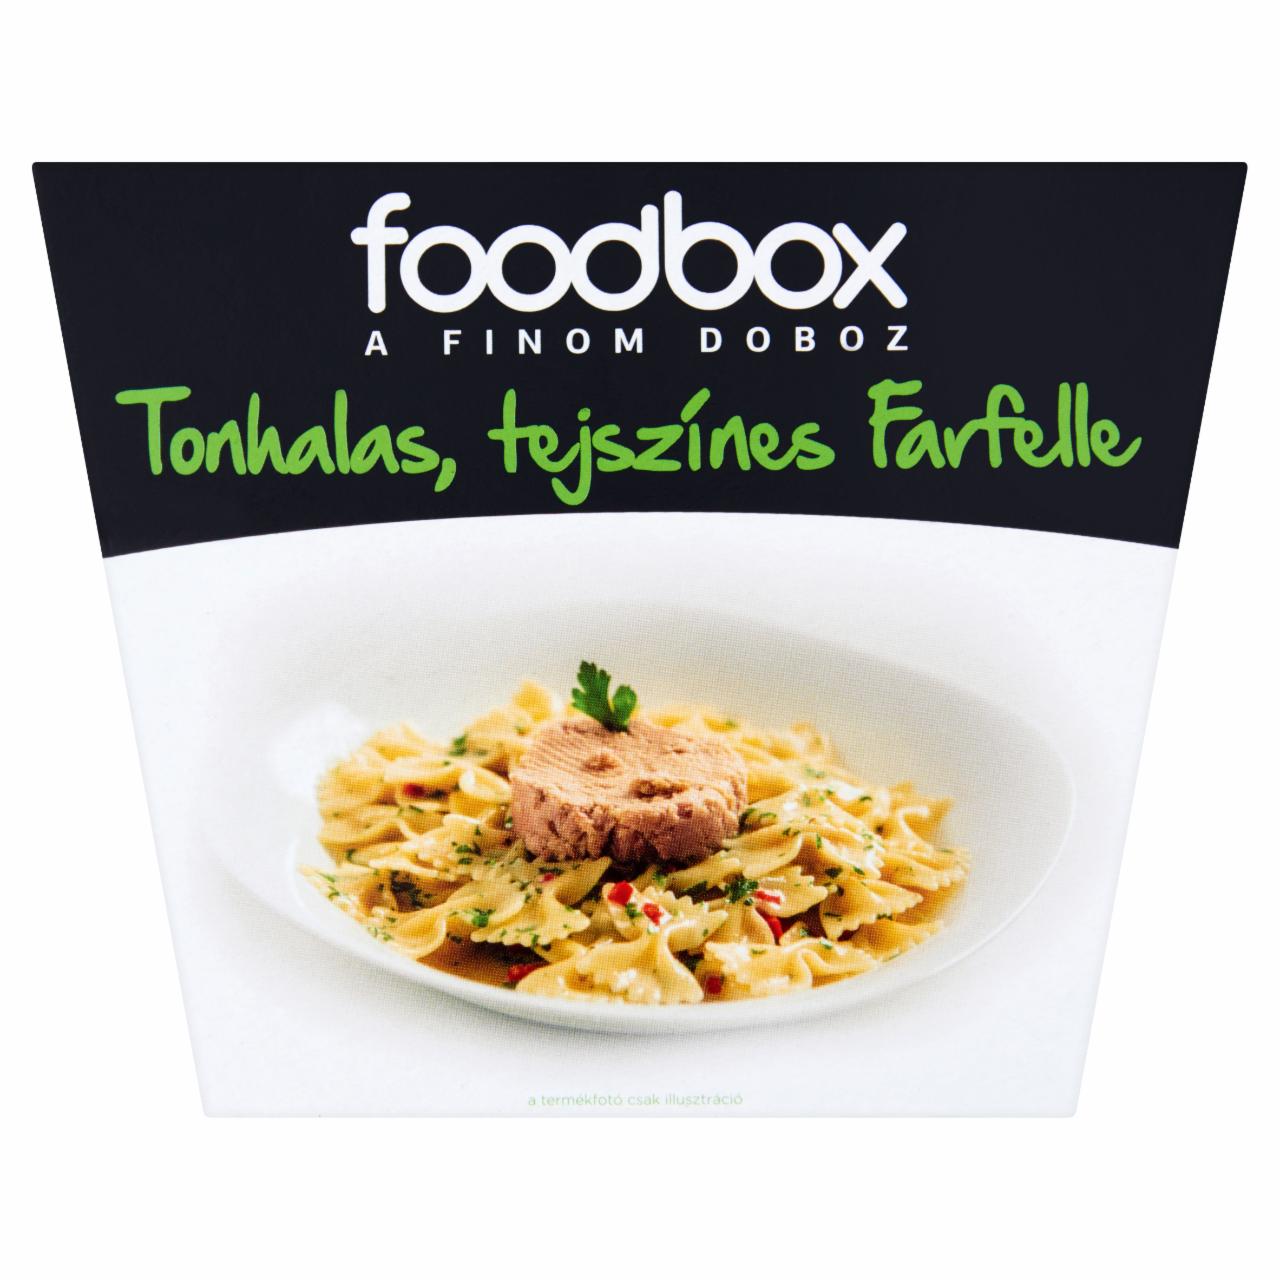 Képek - Foodbox tonhalas, tejszínes farfelle 330 g